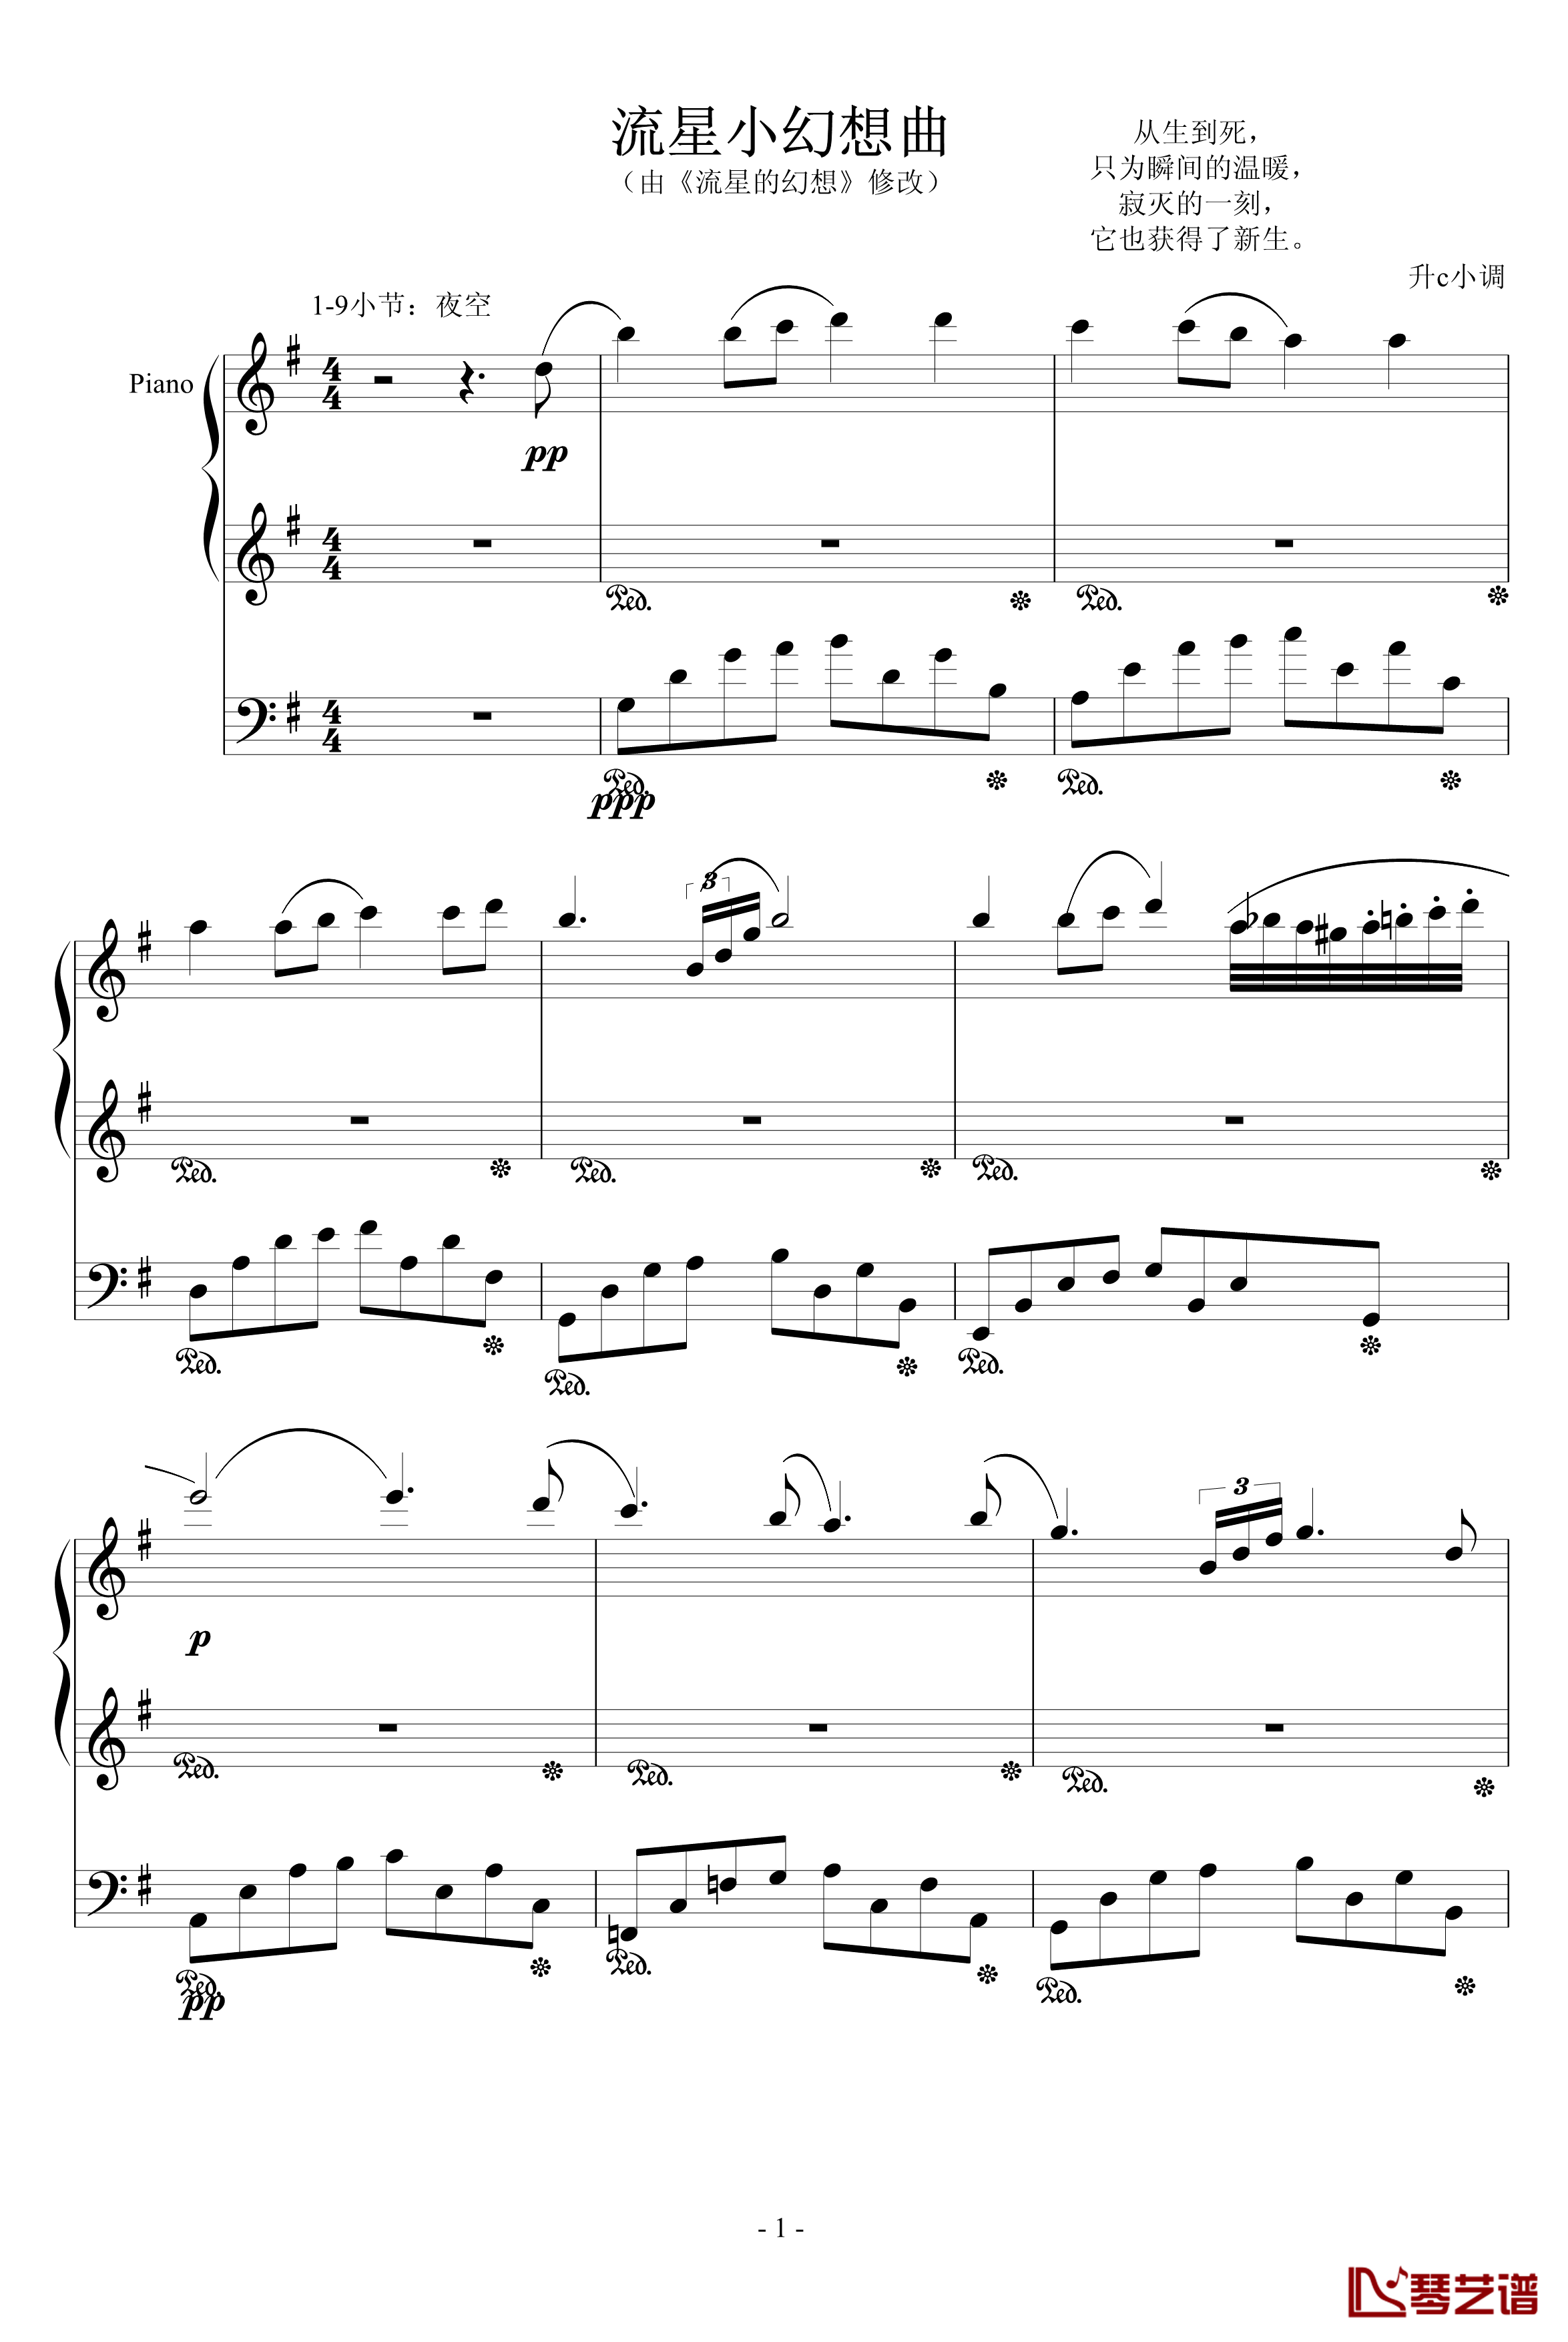 流星小幻想曲钢琴谱-修改-升c小调1